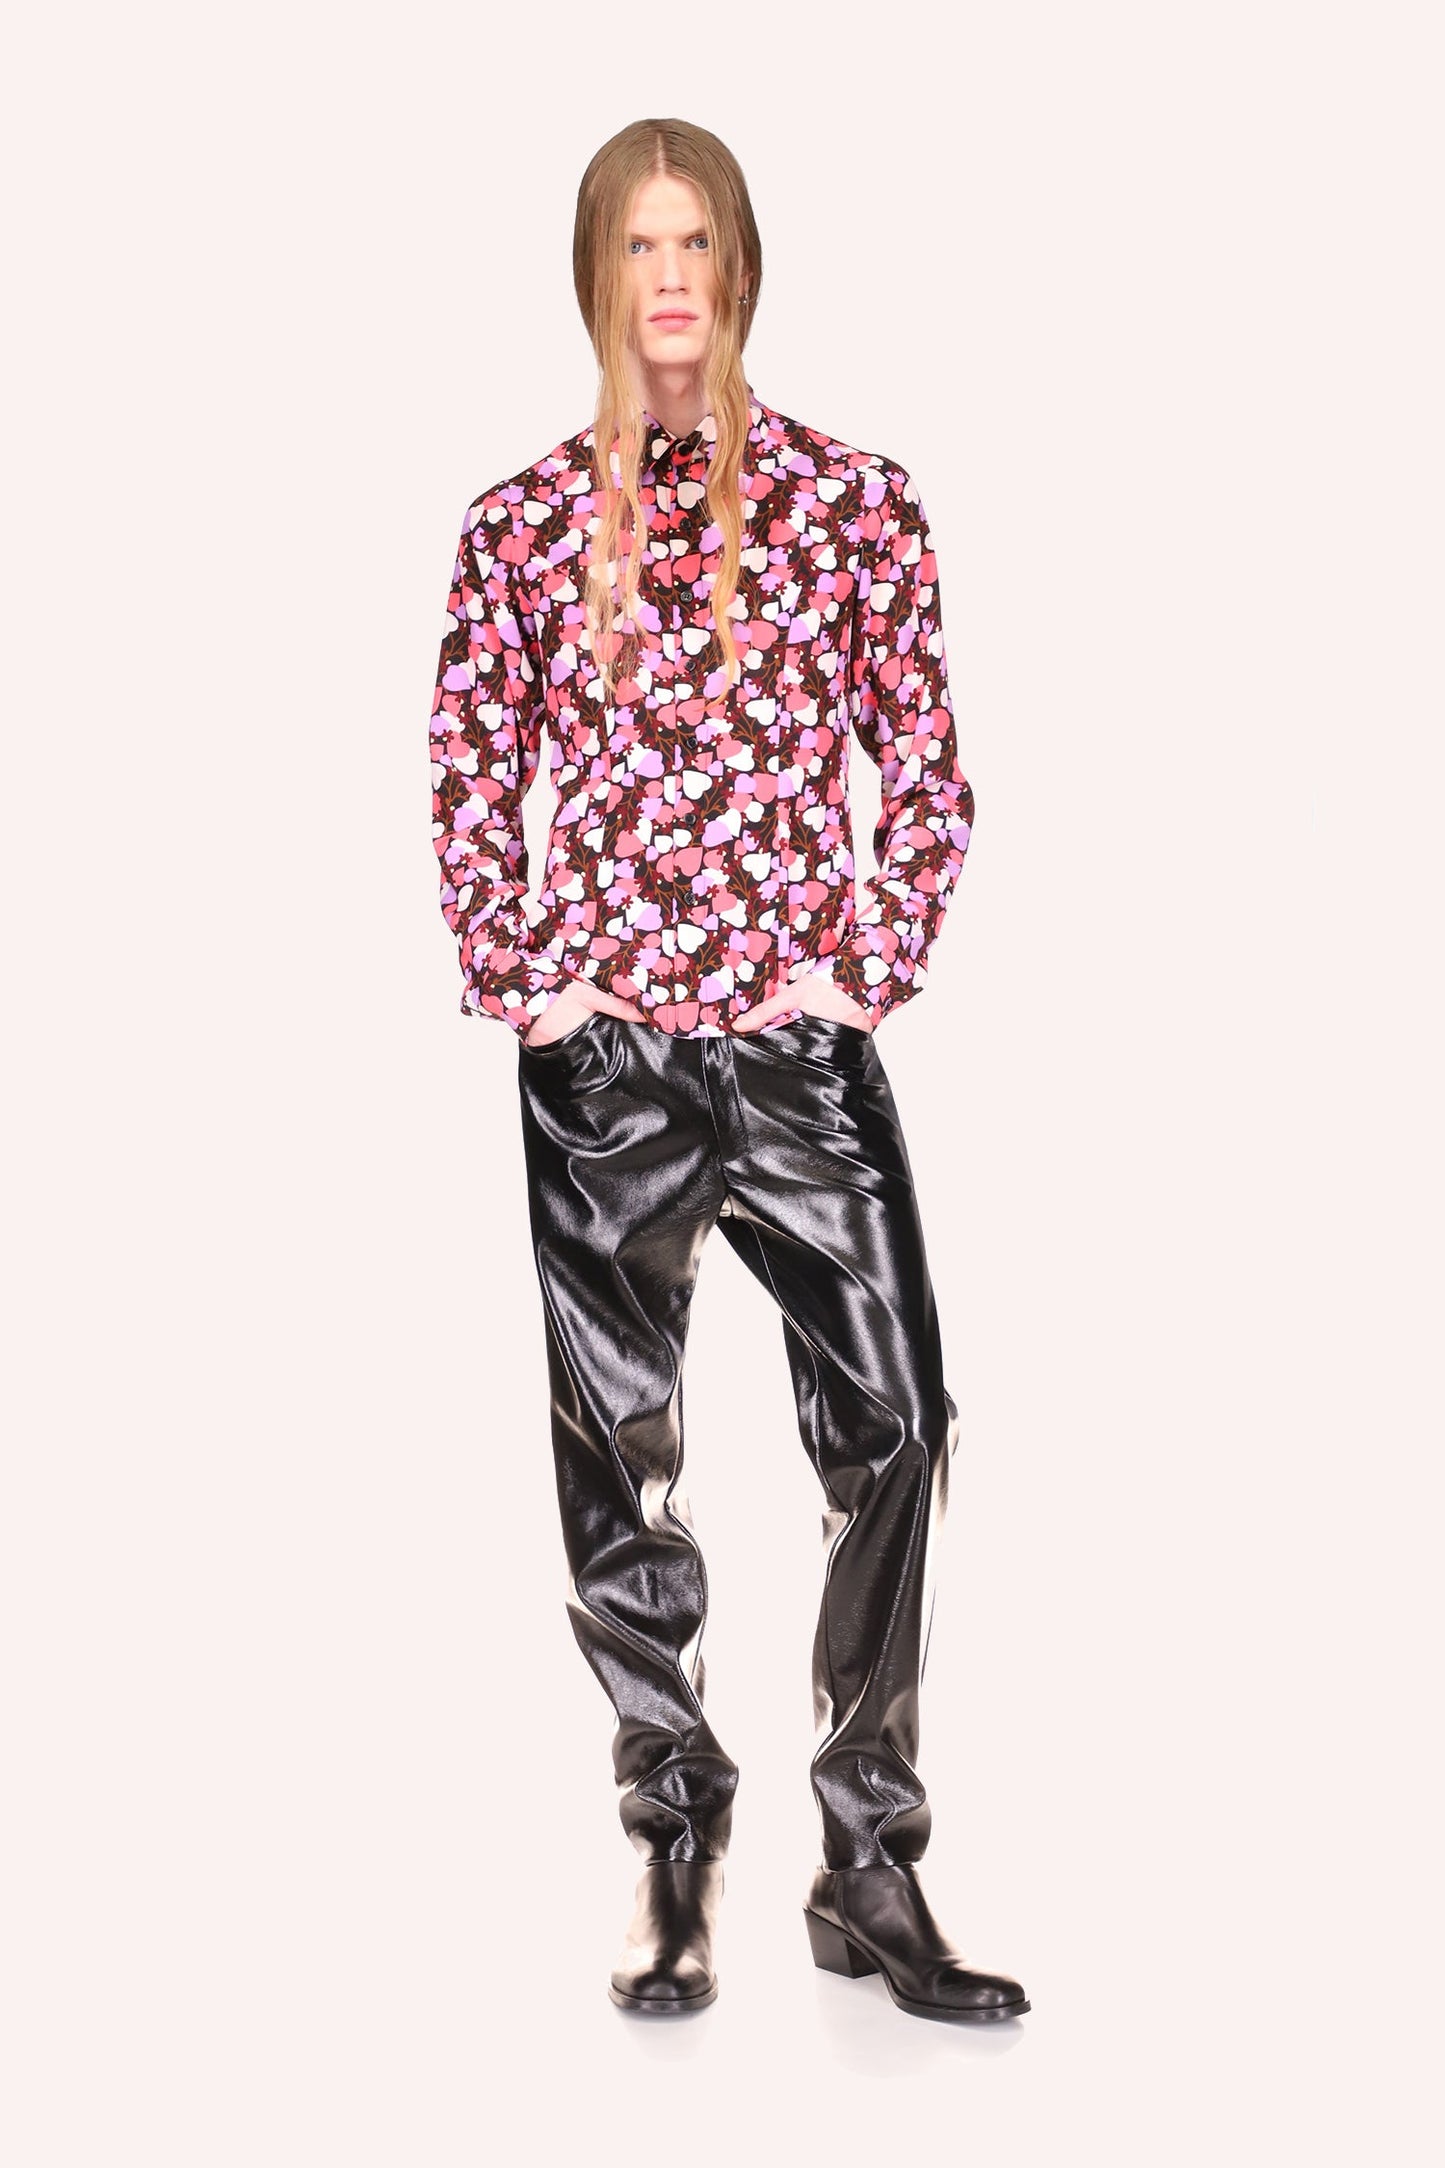  Blooming Hearts Top, chemise boutonnée à manches longues, parfait avec Anna Sui Floral Jacquard Pants Black